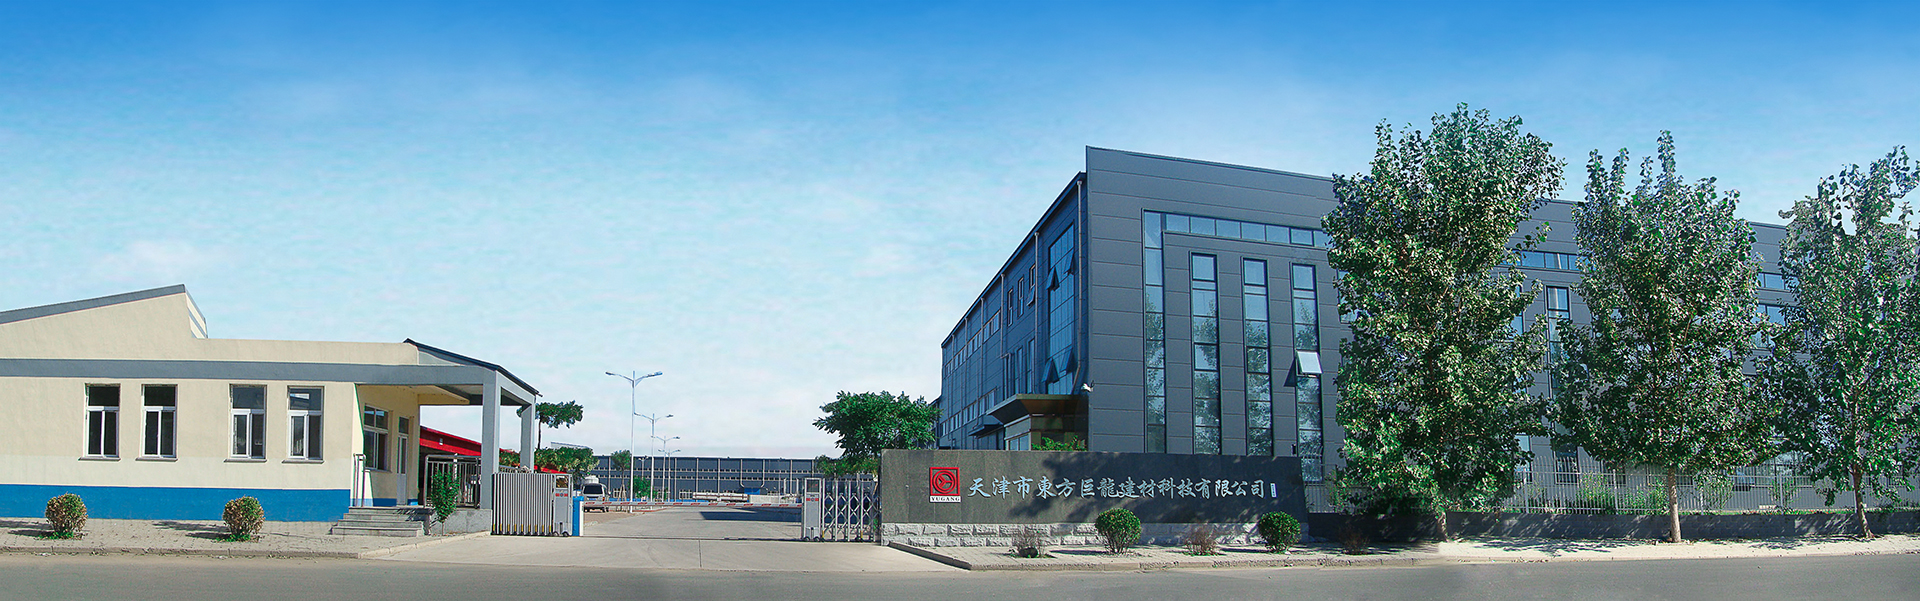 天津市東方巨龍建材科技有限公司 